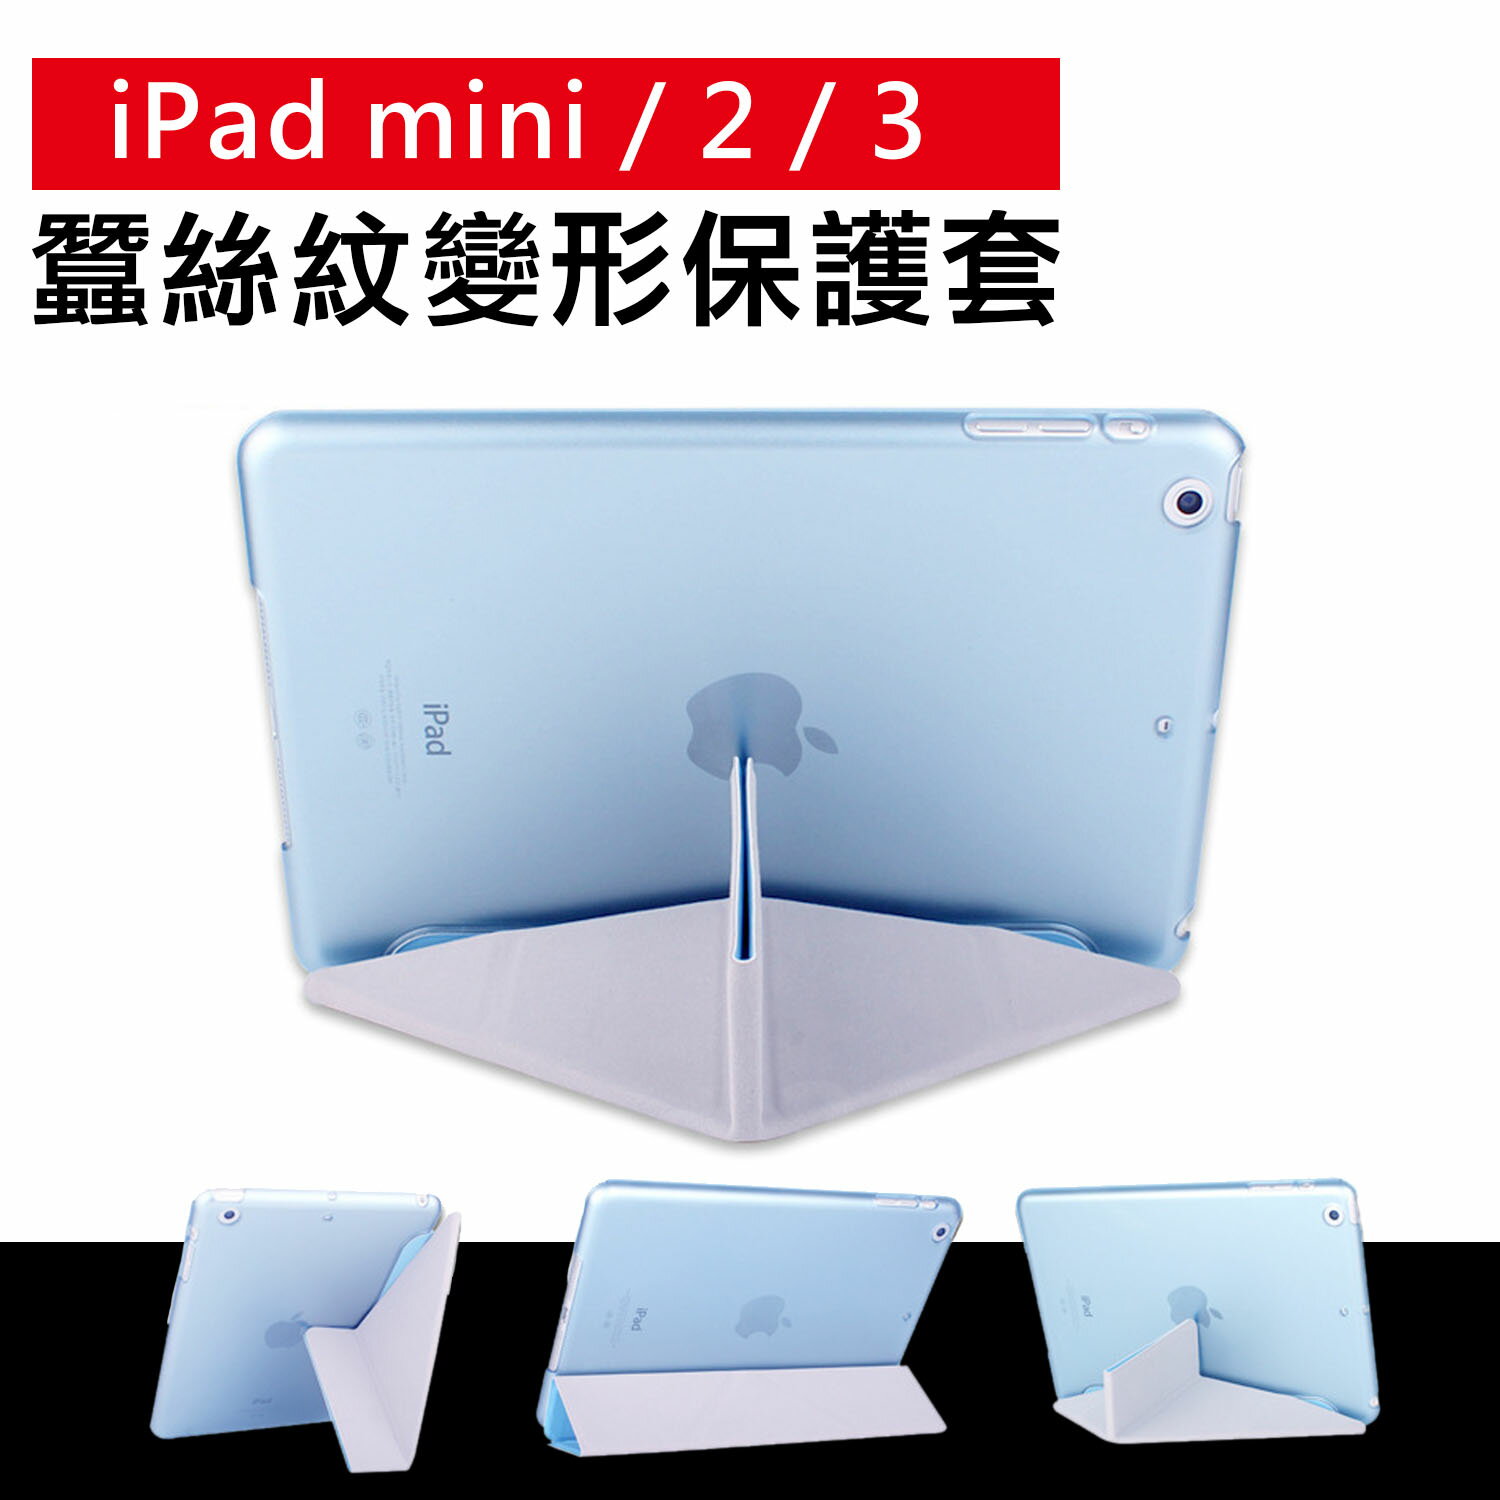 iPad mini 1 / 2 / 3 專用 蠶絲紋 變形金剛皮套 【C-APL-P01】 多角度摺疊保護套 立架式皮套Alice3C